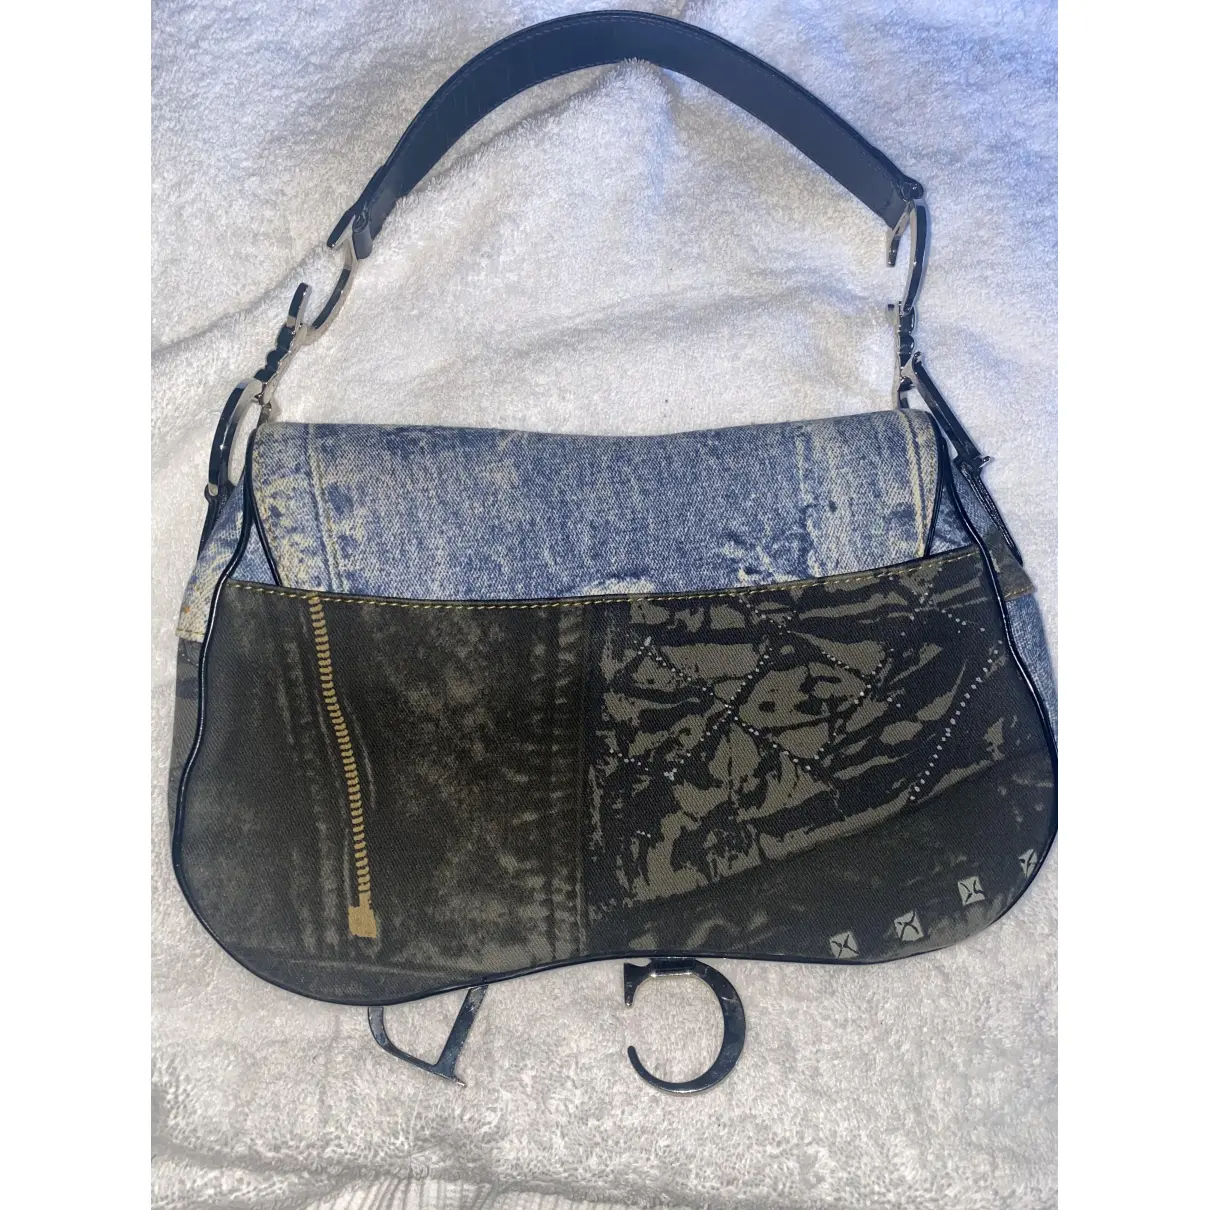 Buy Dior Double Saddle handbag online - Vintage